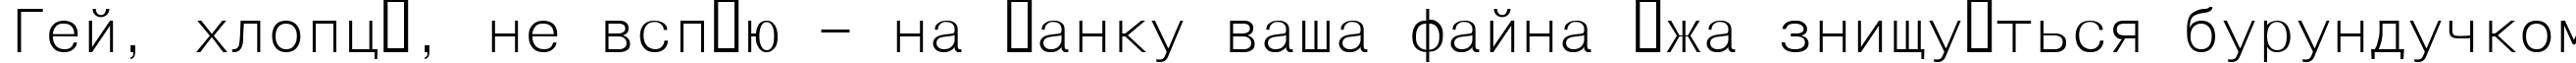 Пример написания шрифтом HelvFixed текста на украинском